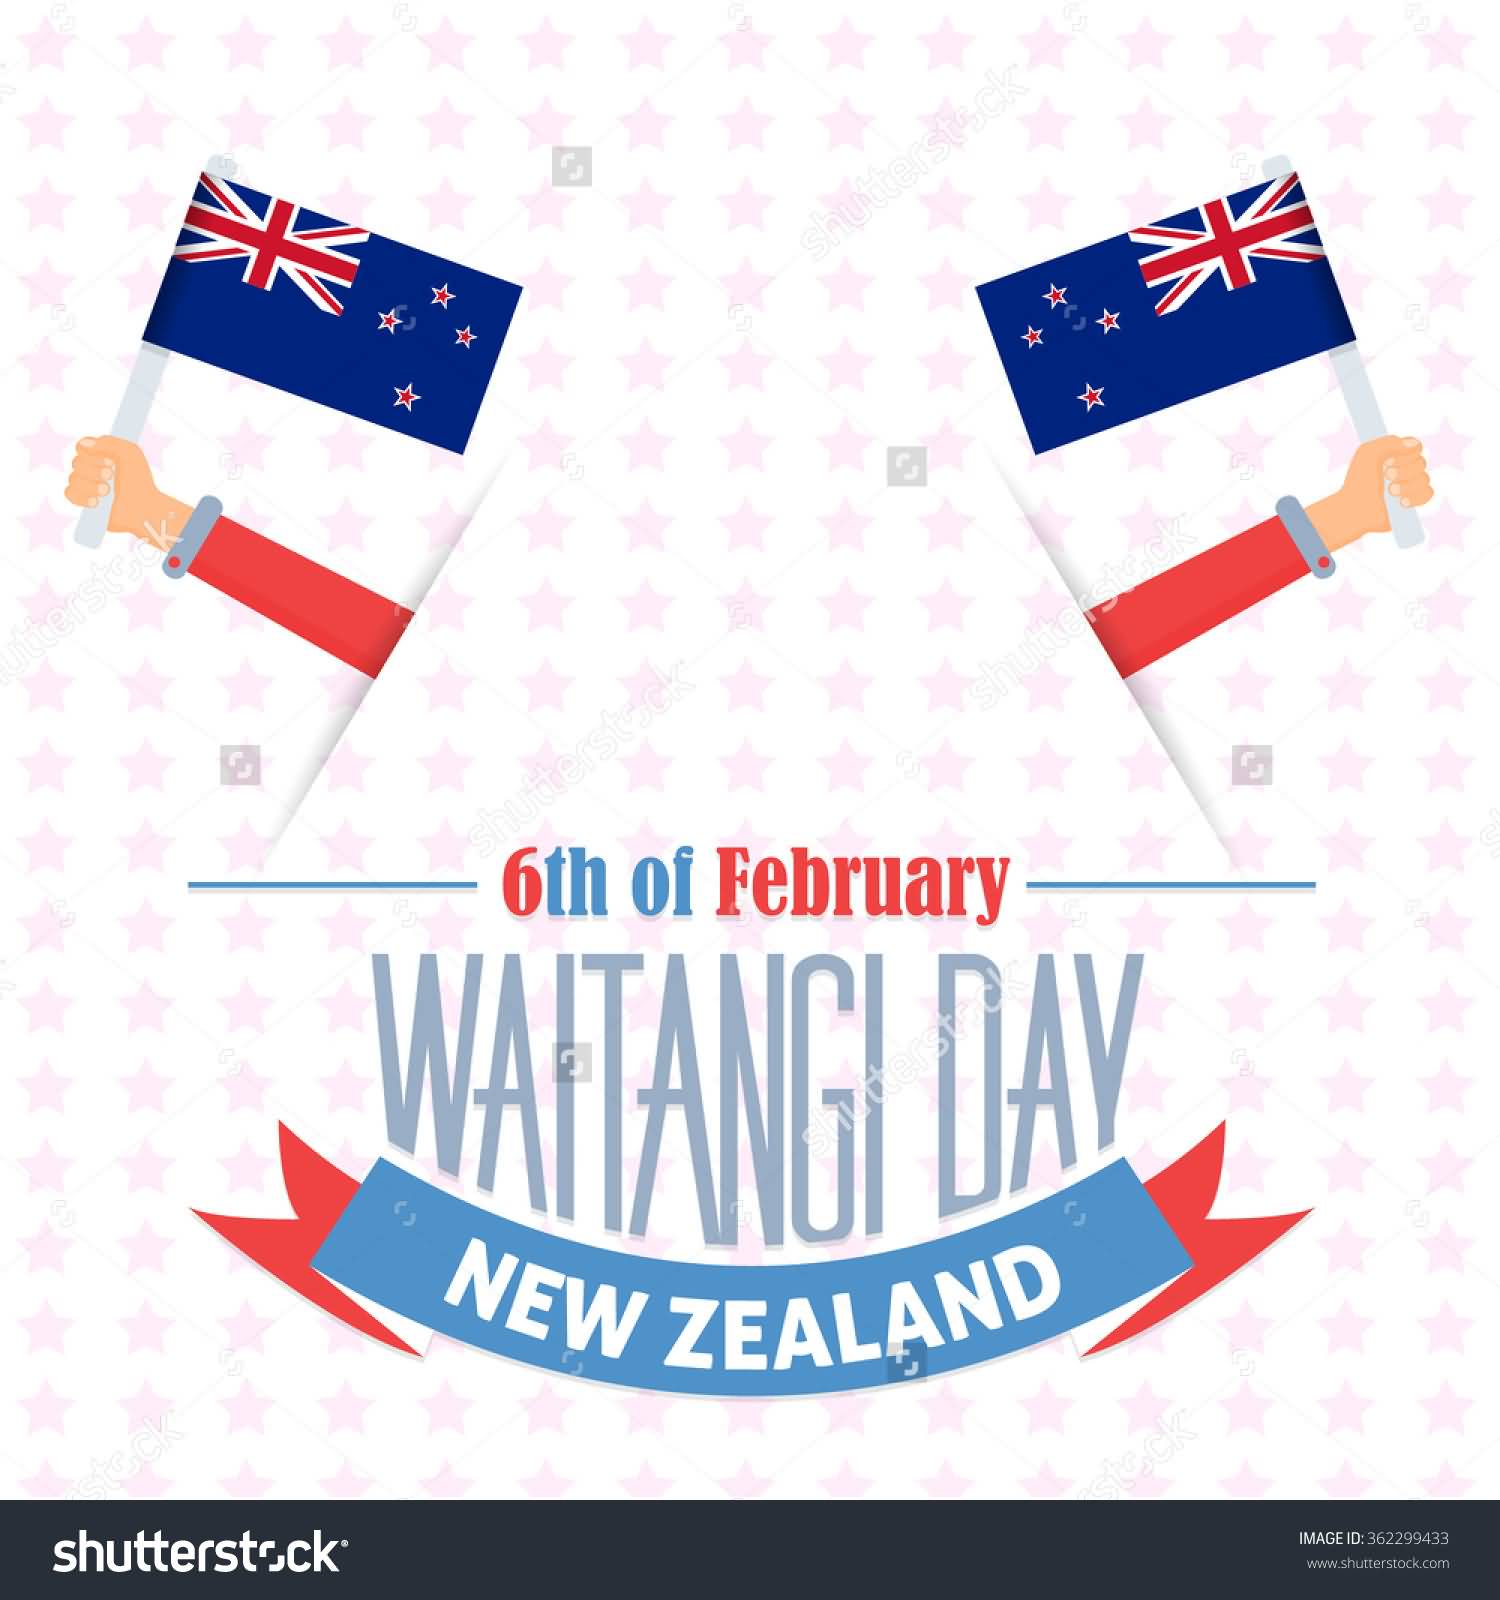 6th-Of-February-Waitangi-Day-New-Zealand-Illustration.jpg